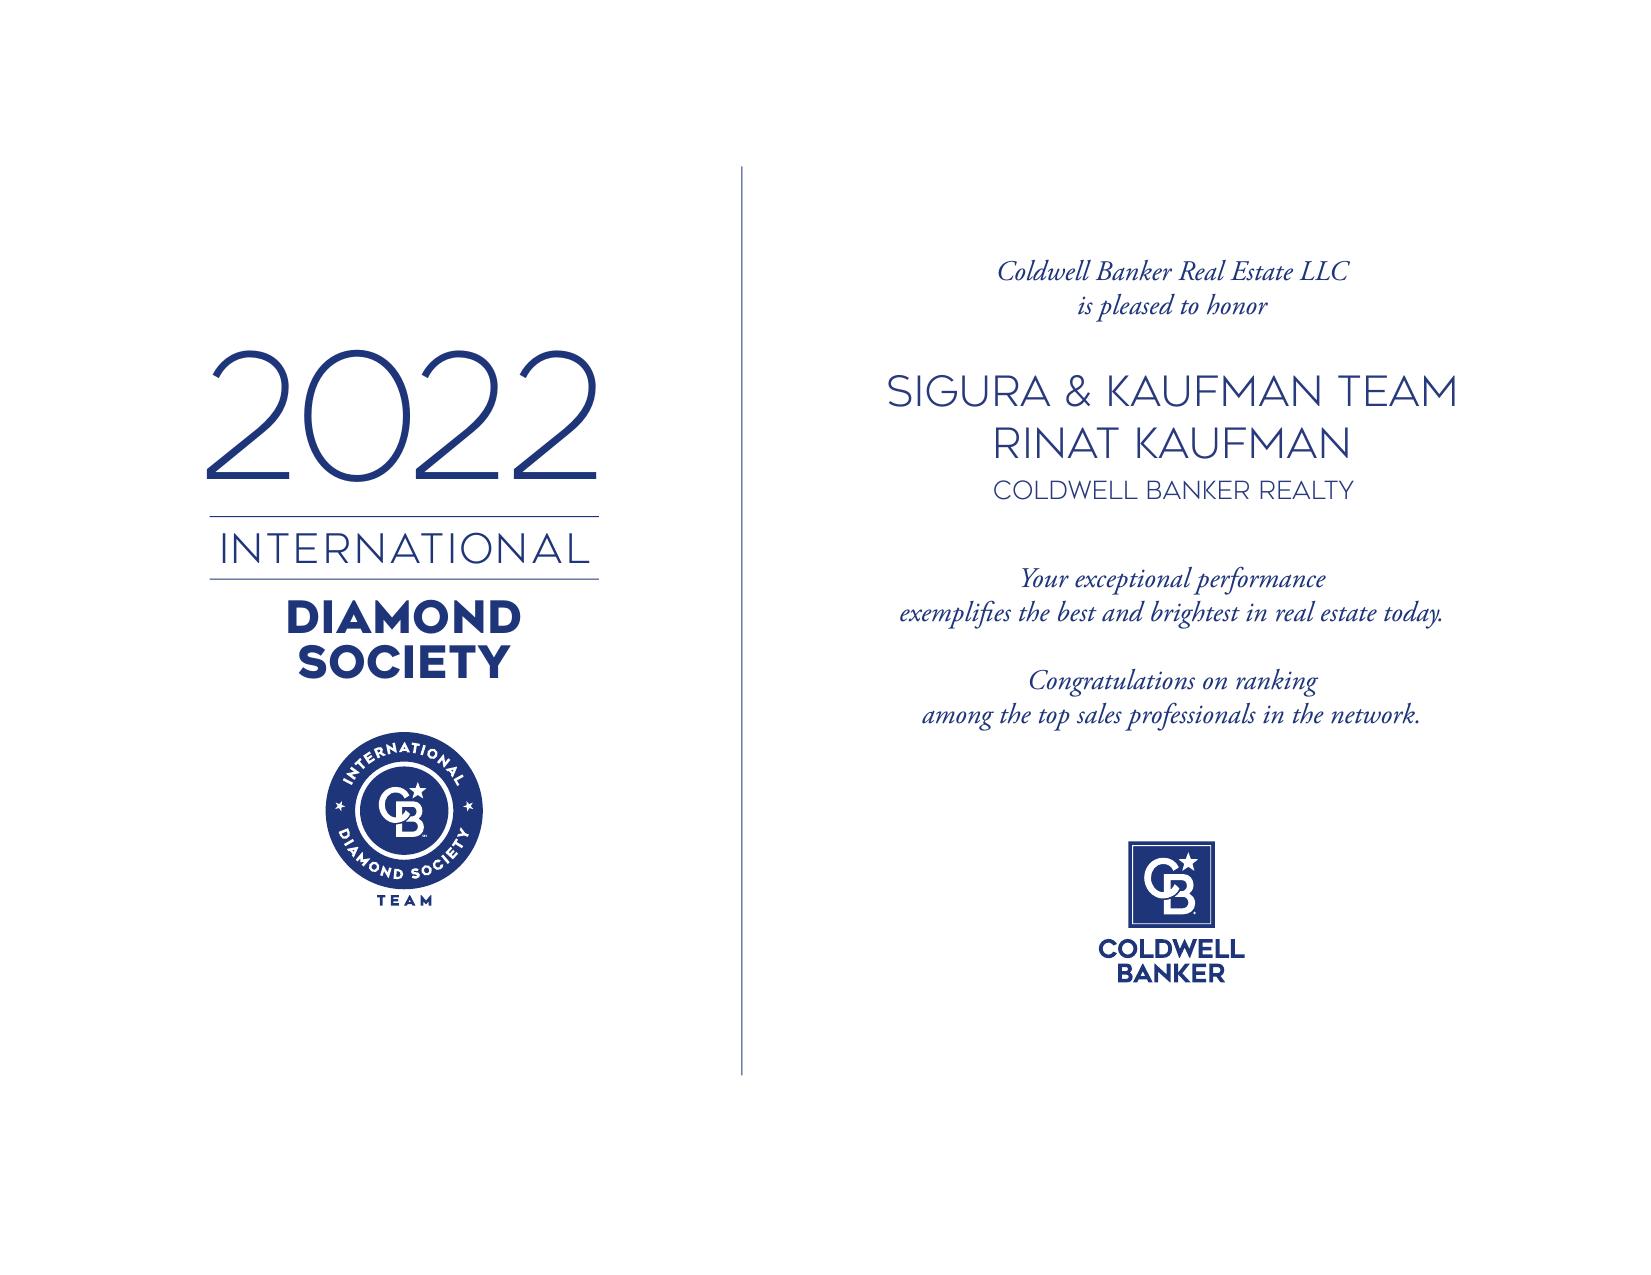 Diamond Society image - 2022